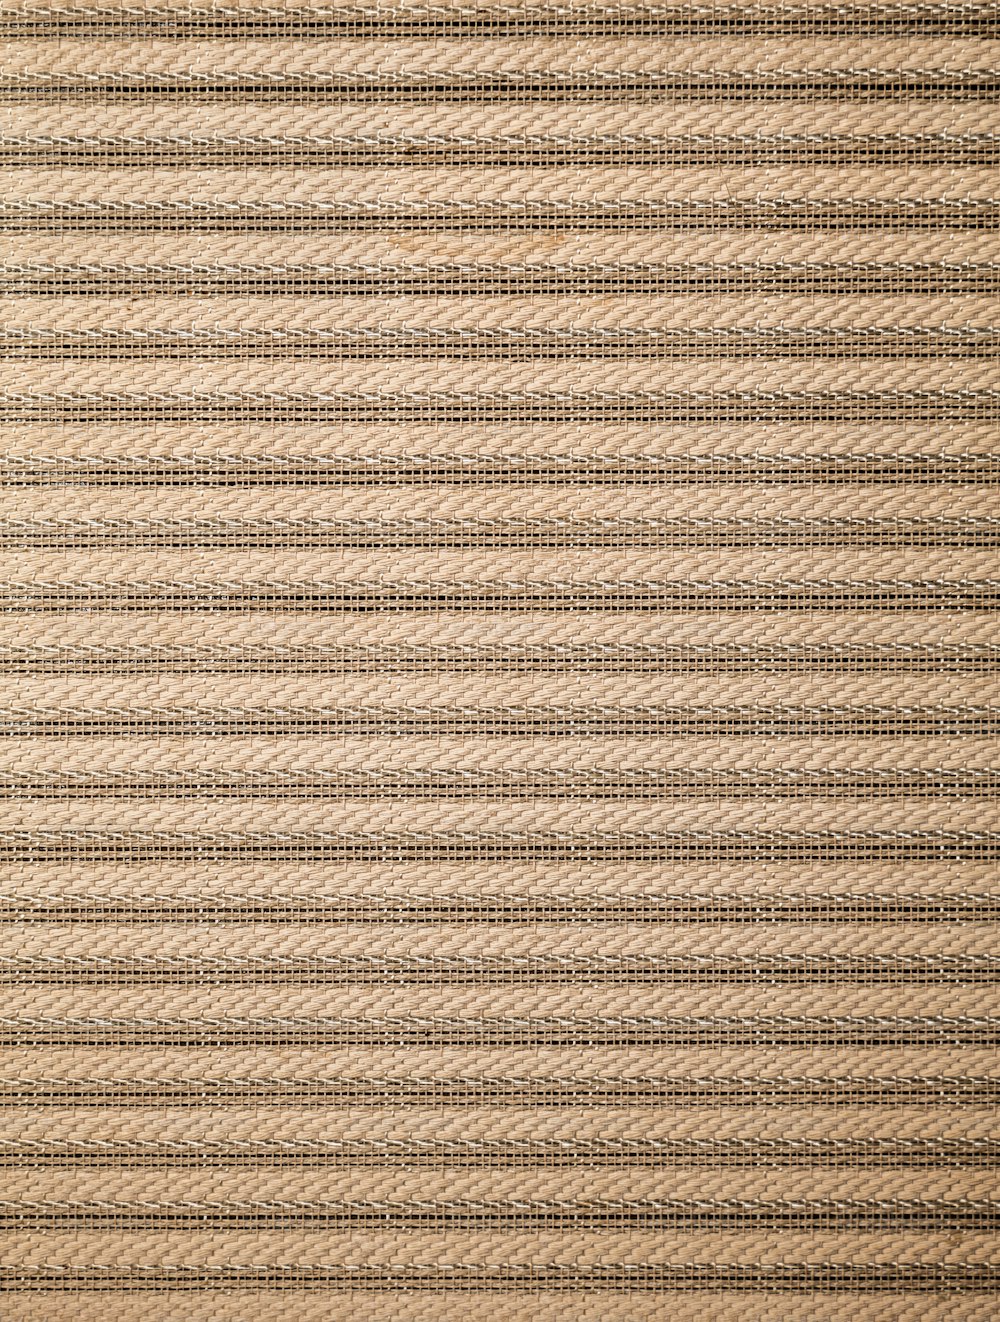 eine Nahaufnahme eines Teppichs mit Linien darauf